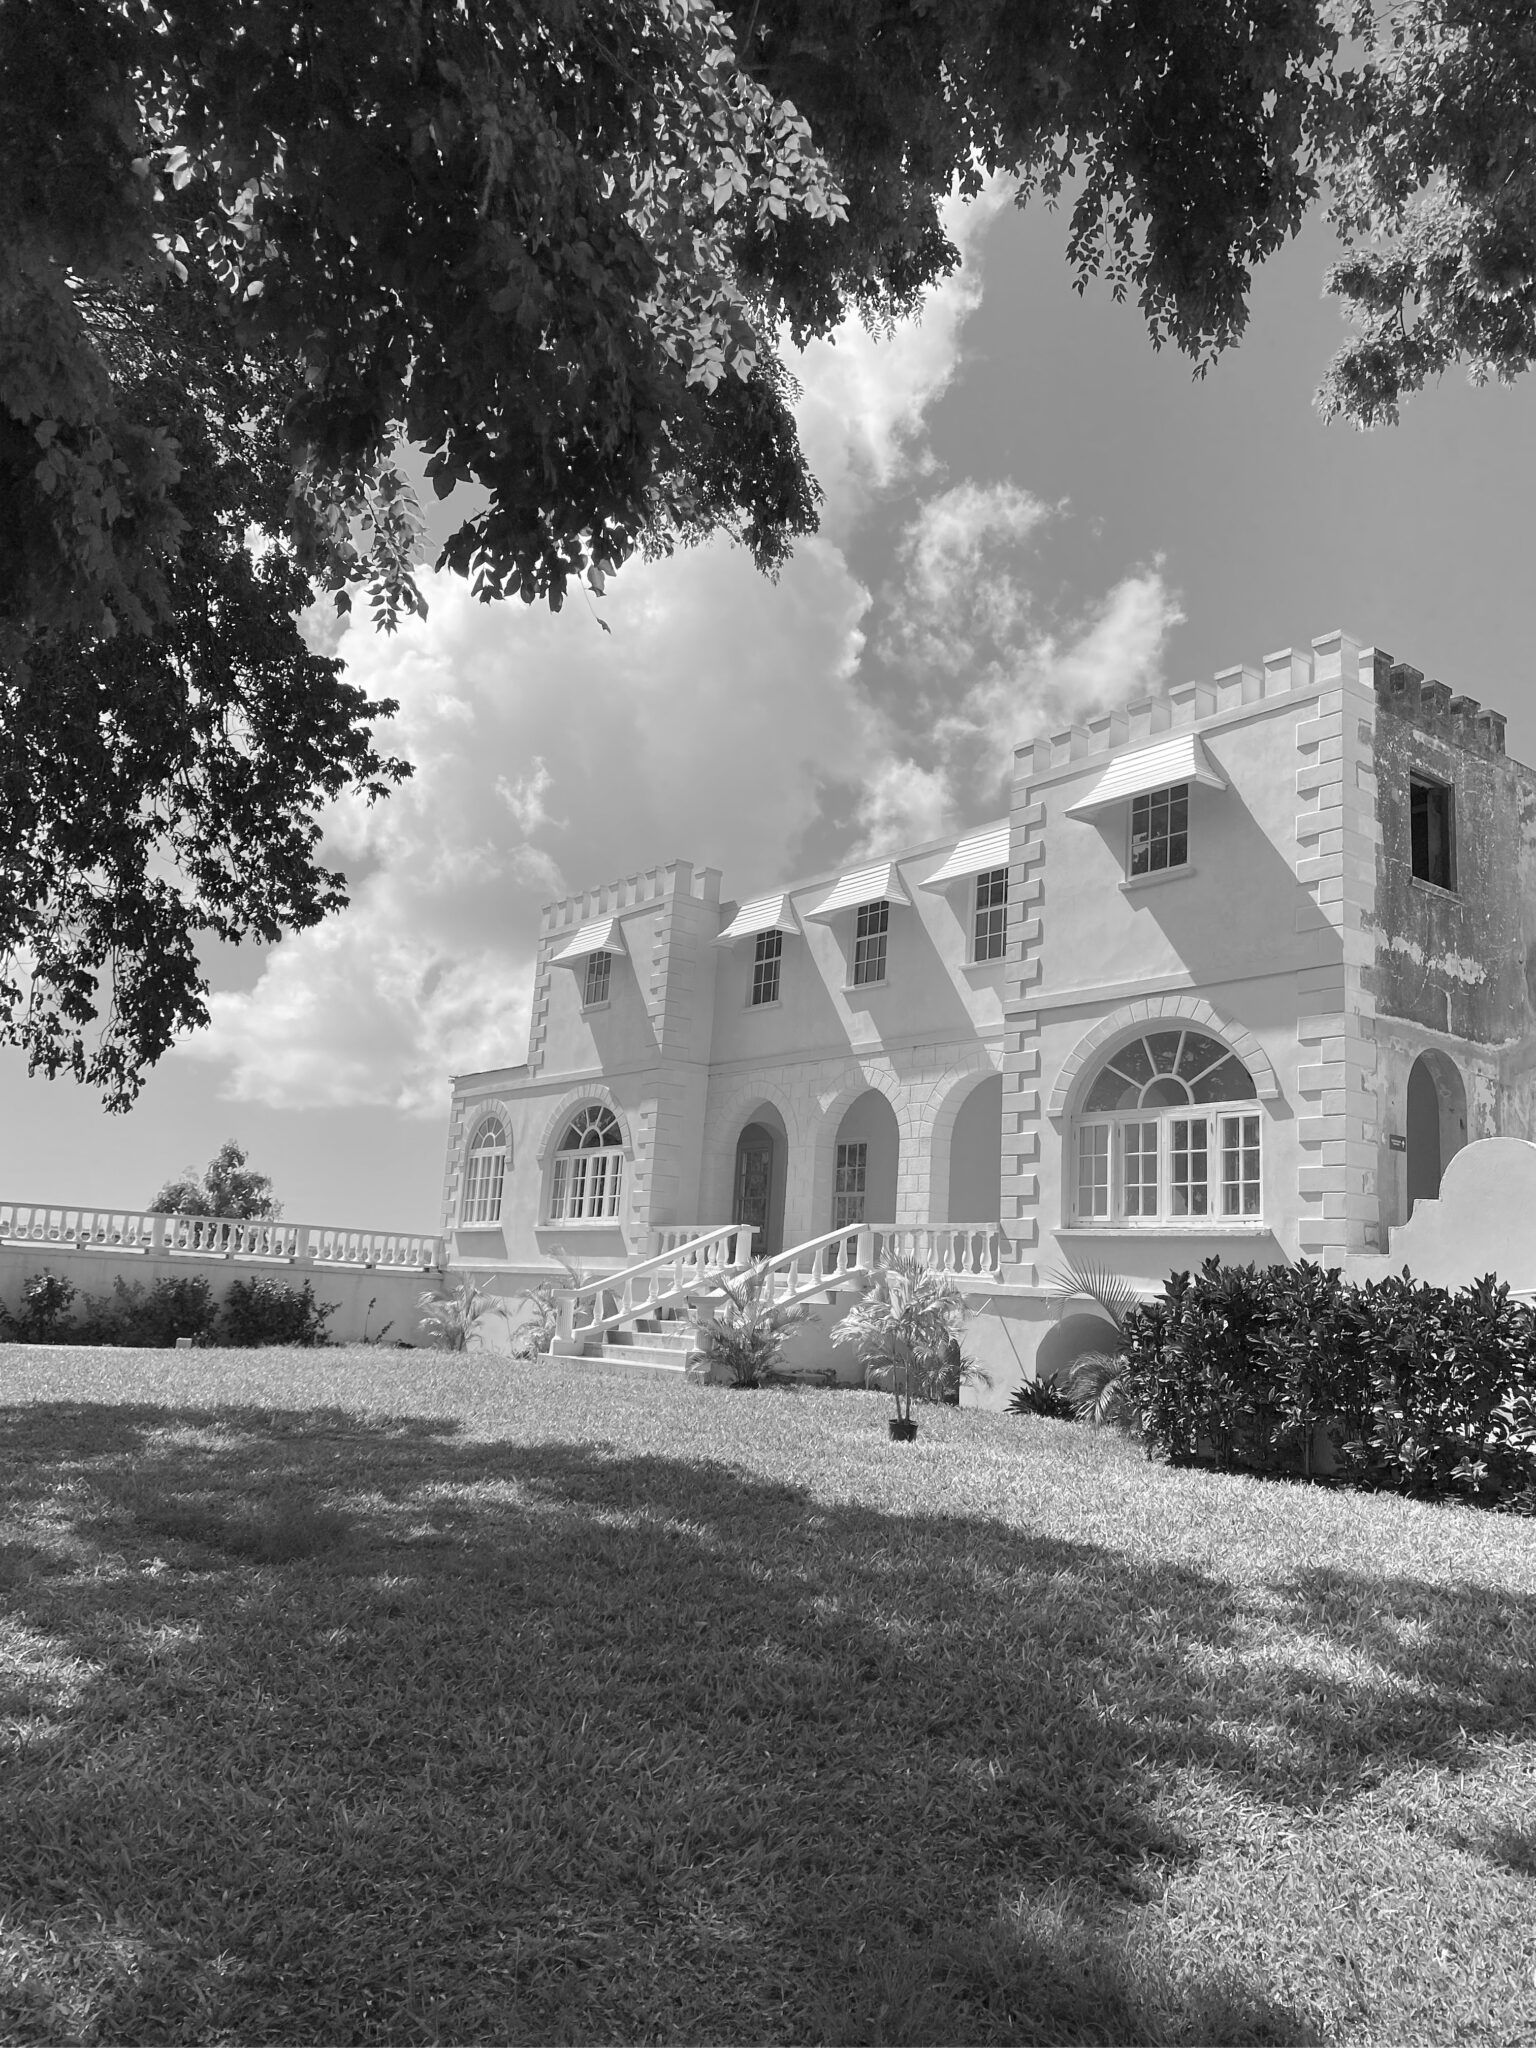 Sídlo Bentley Mansion, Barbados - Kilchoman